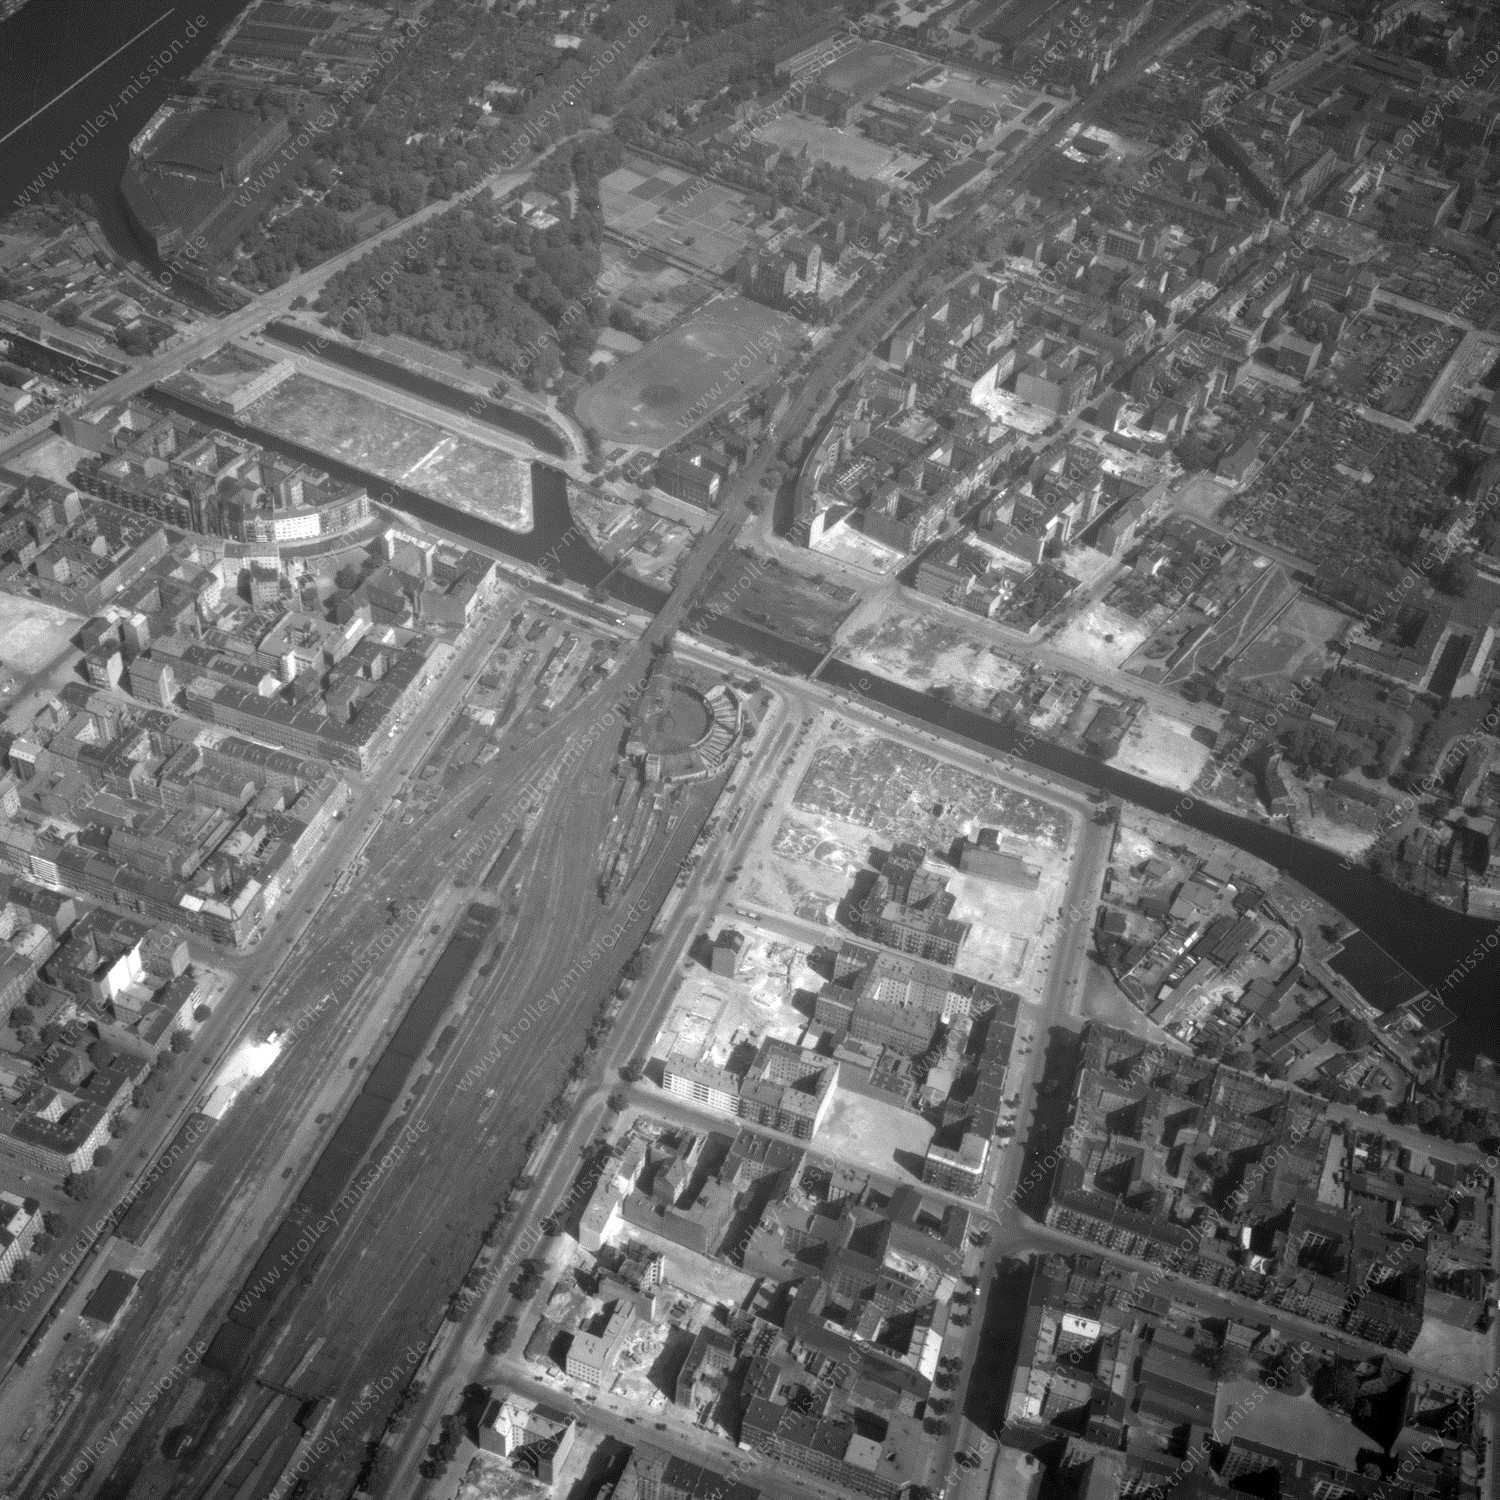 Alte Fotos und Luftbilder von Berlin - Luftbildaufnahme Nr. 04 - Historische Luftaufnahmen von West-Berlin aus dem Jahr 1954 - Flugstrecke November